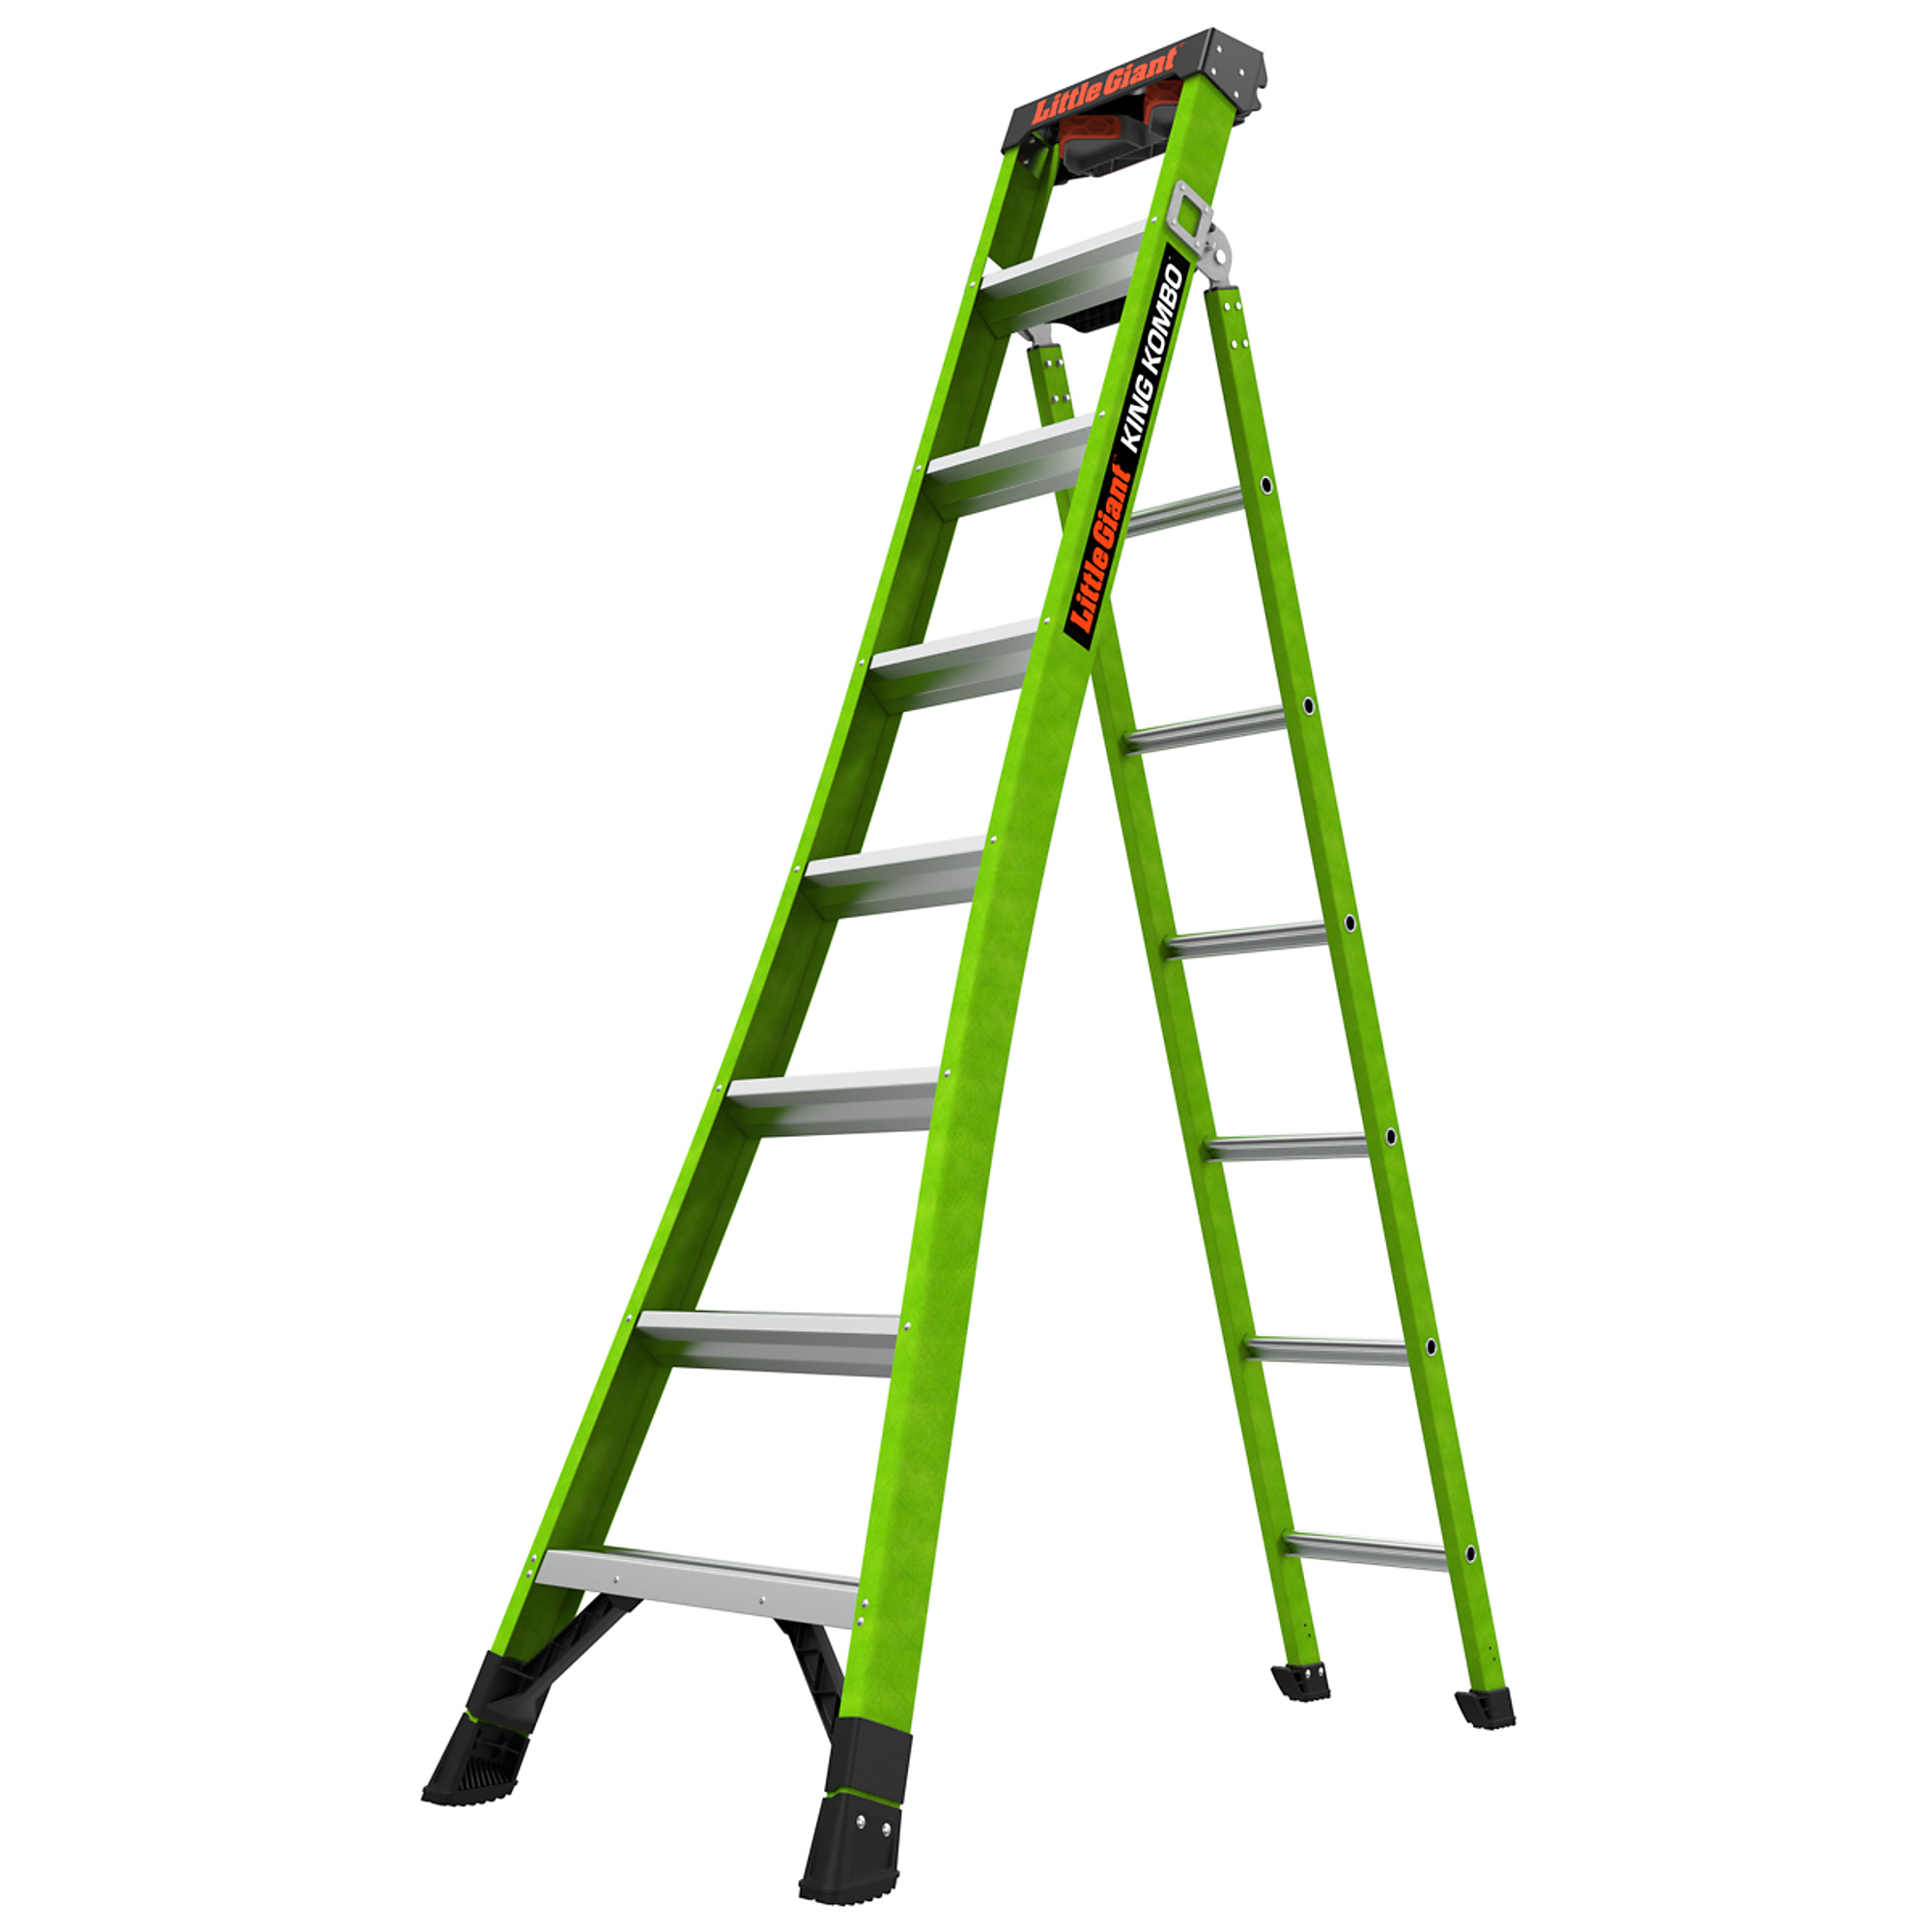 KING KOMBO Profes 8ft. 375lb Fiberglass Combo Ladder, Height 8 ft, Capacity 375 lb, Material Fiberglass, Model - Little Giant Ladder 13908-001